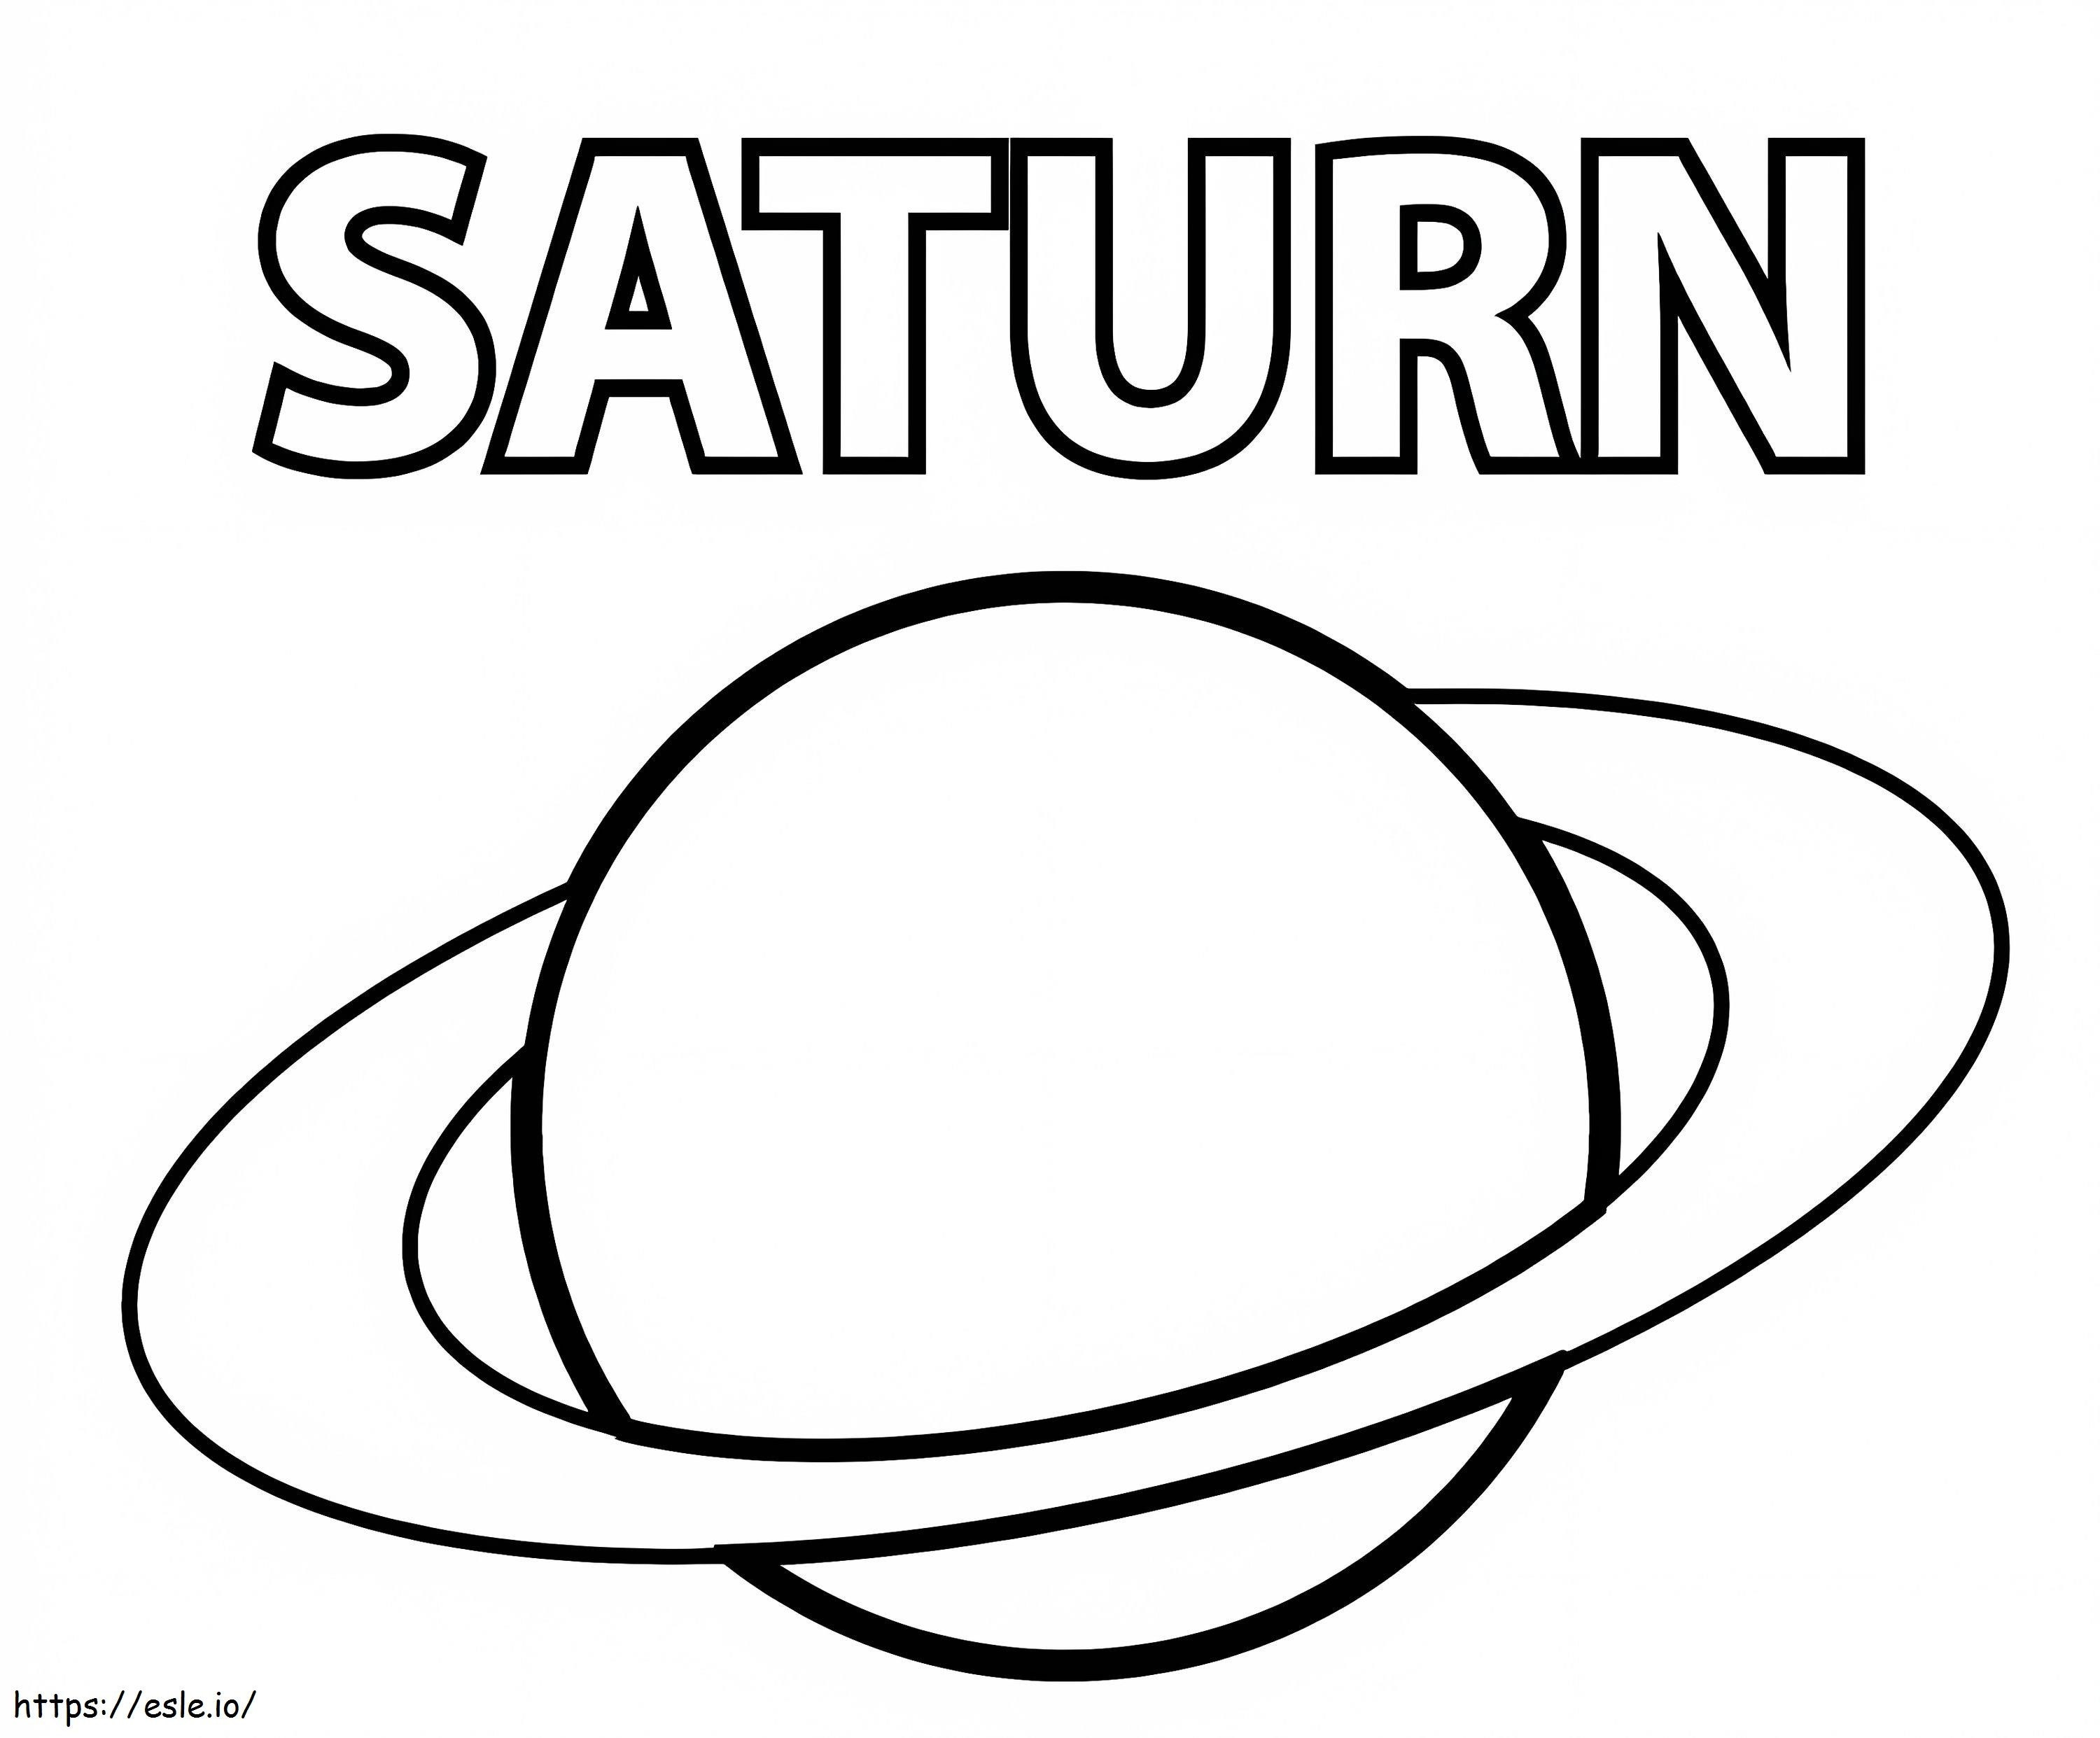 Semplice pianeta Saturno da colorare